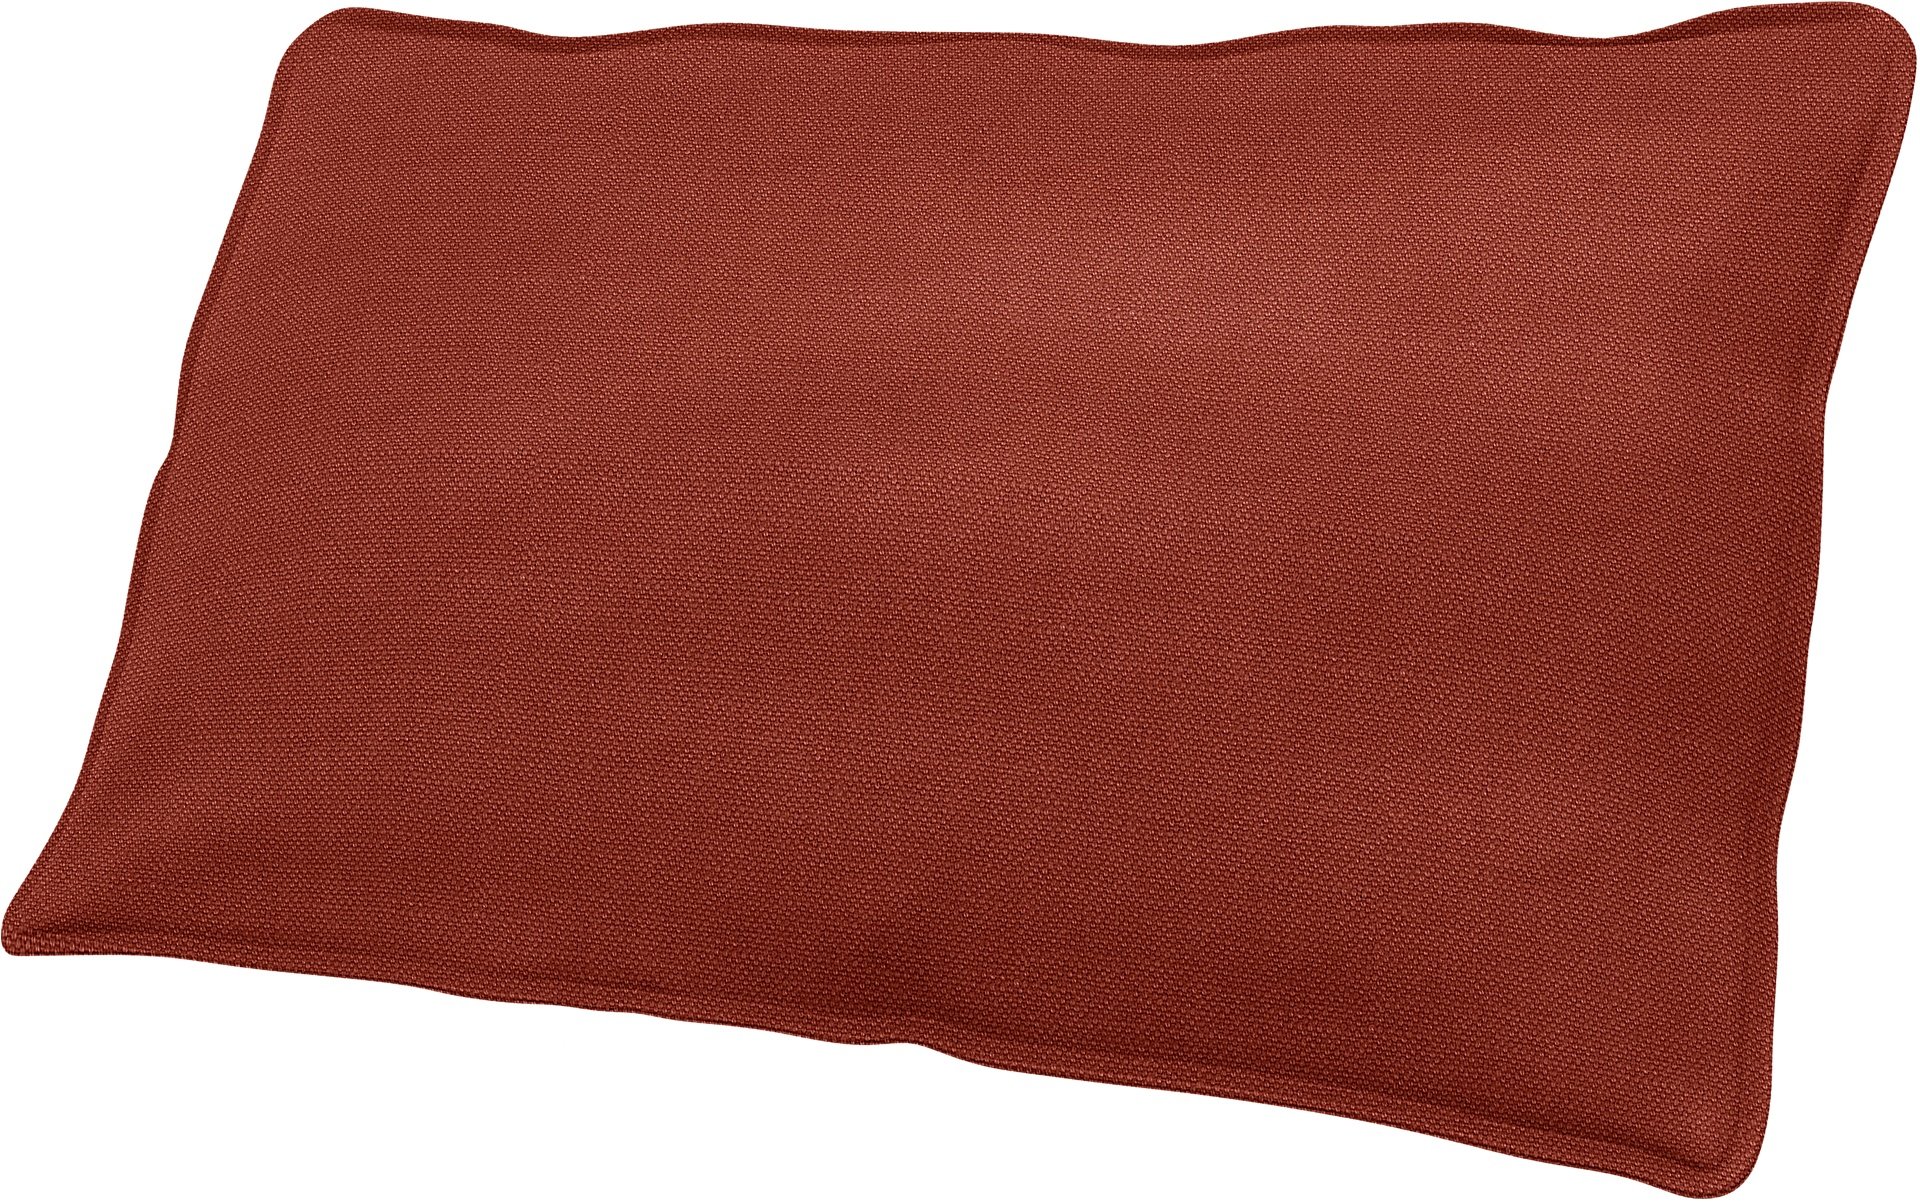 IKEA - Soderhamn Small Decorative Cushion Cover, Cayenne, Linen - Bemz